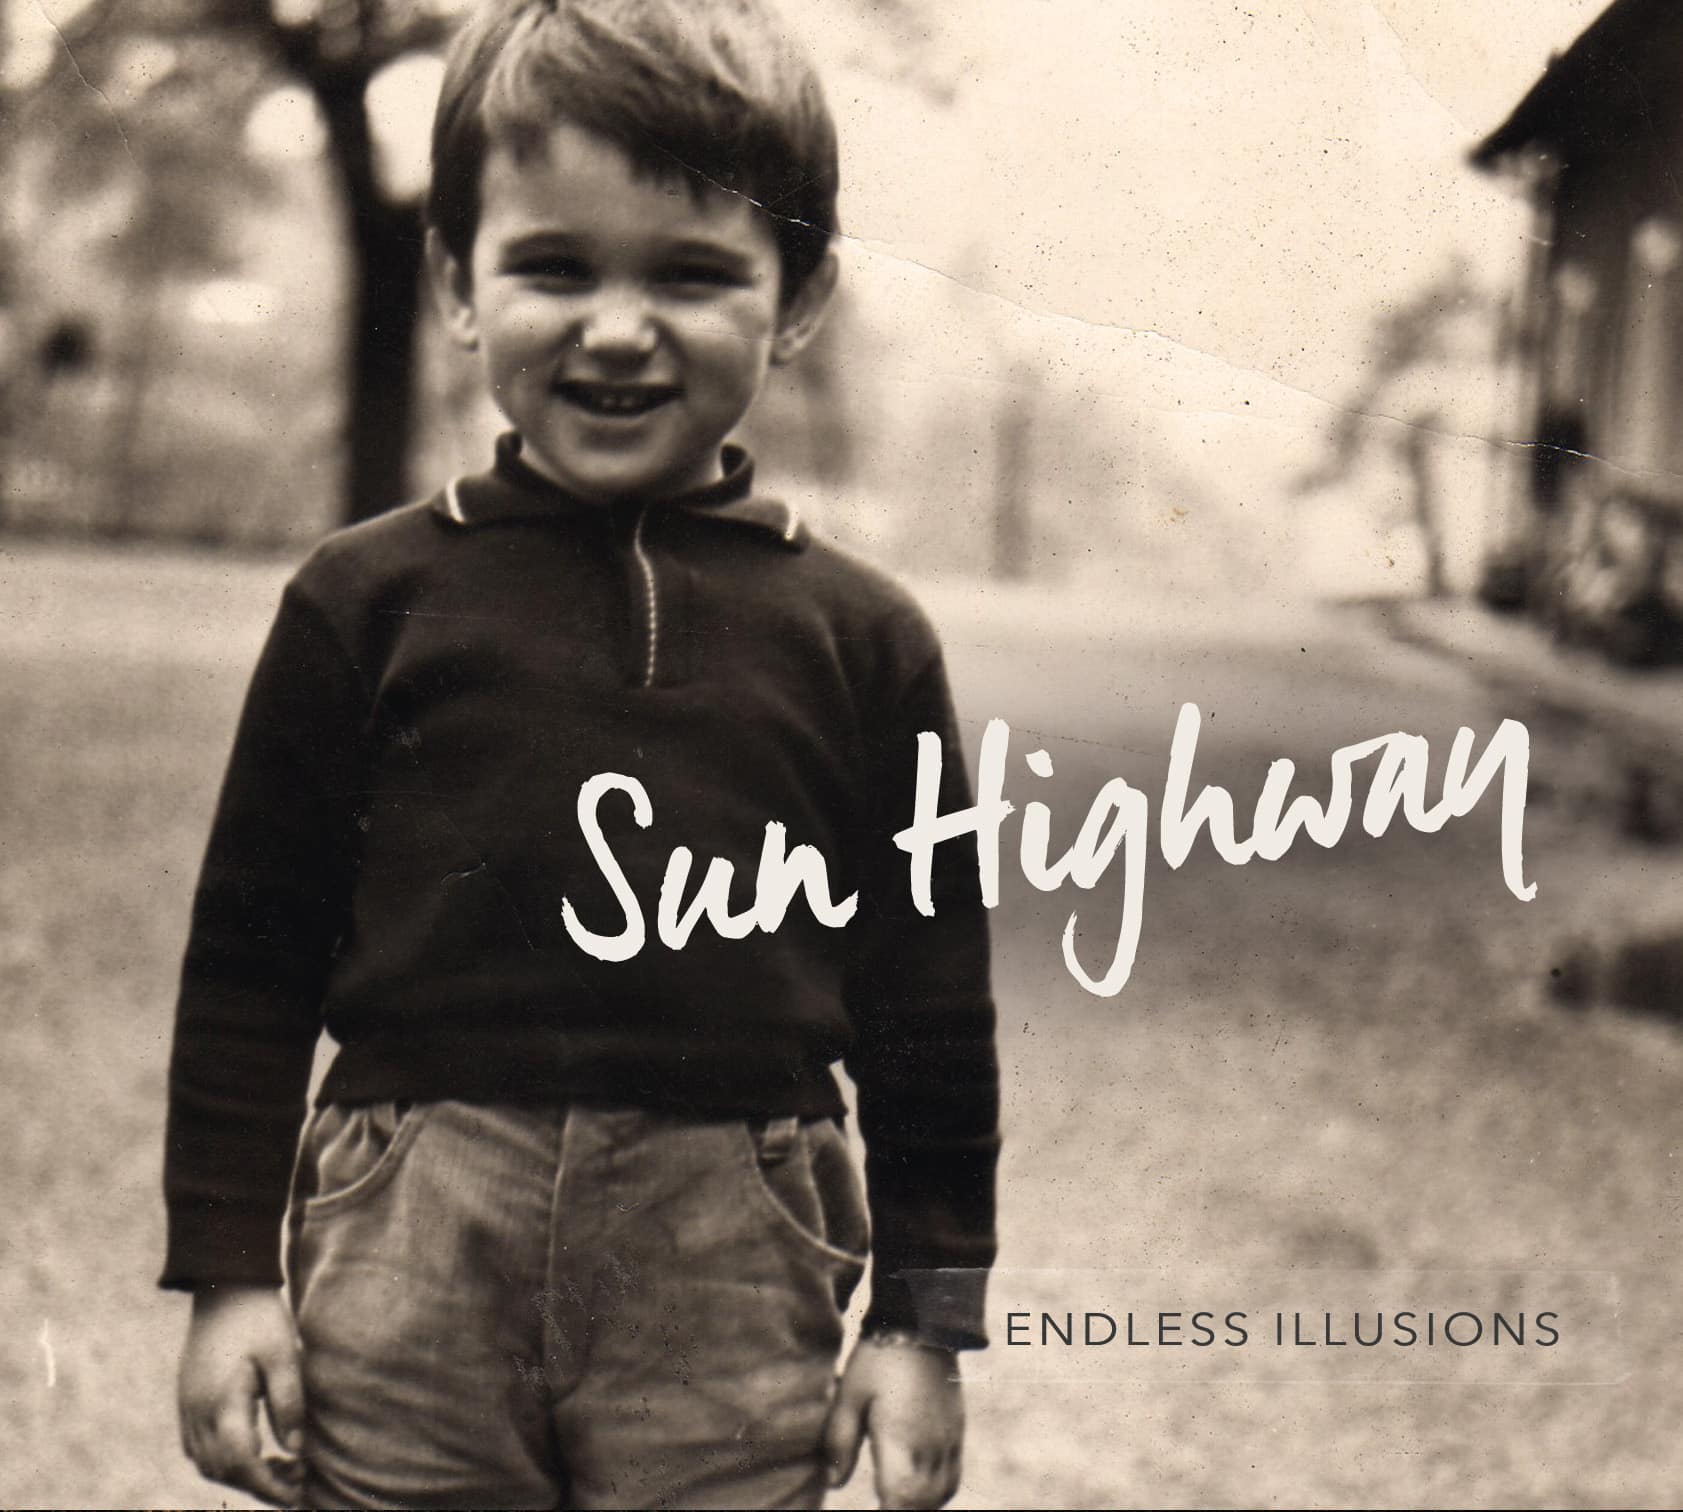 C’est made in Dijon : « Endless illusions » l’album de Sun Highway est sorti !